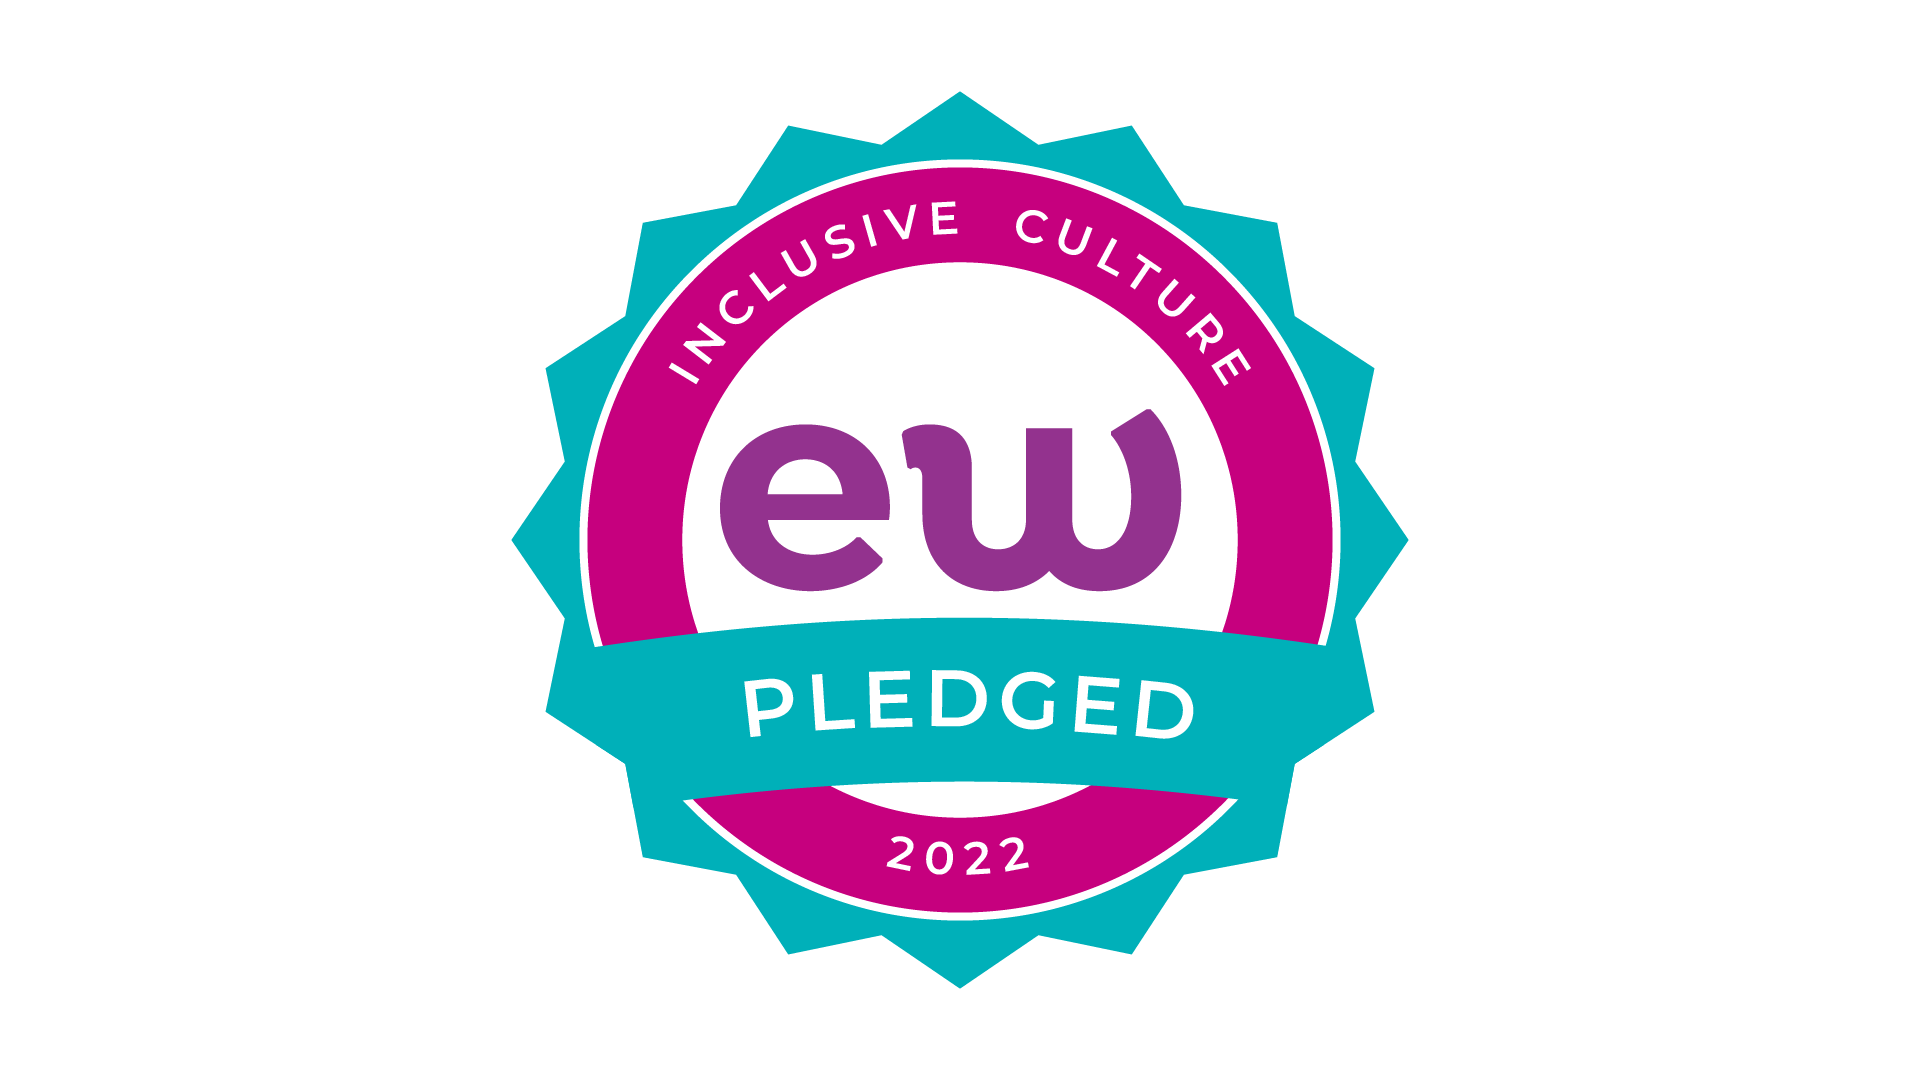 Inclusive Culture Pledge 2022